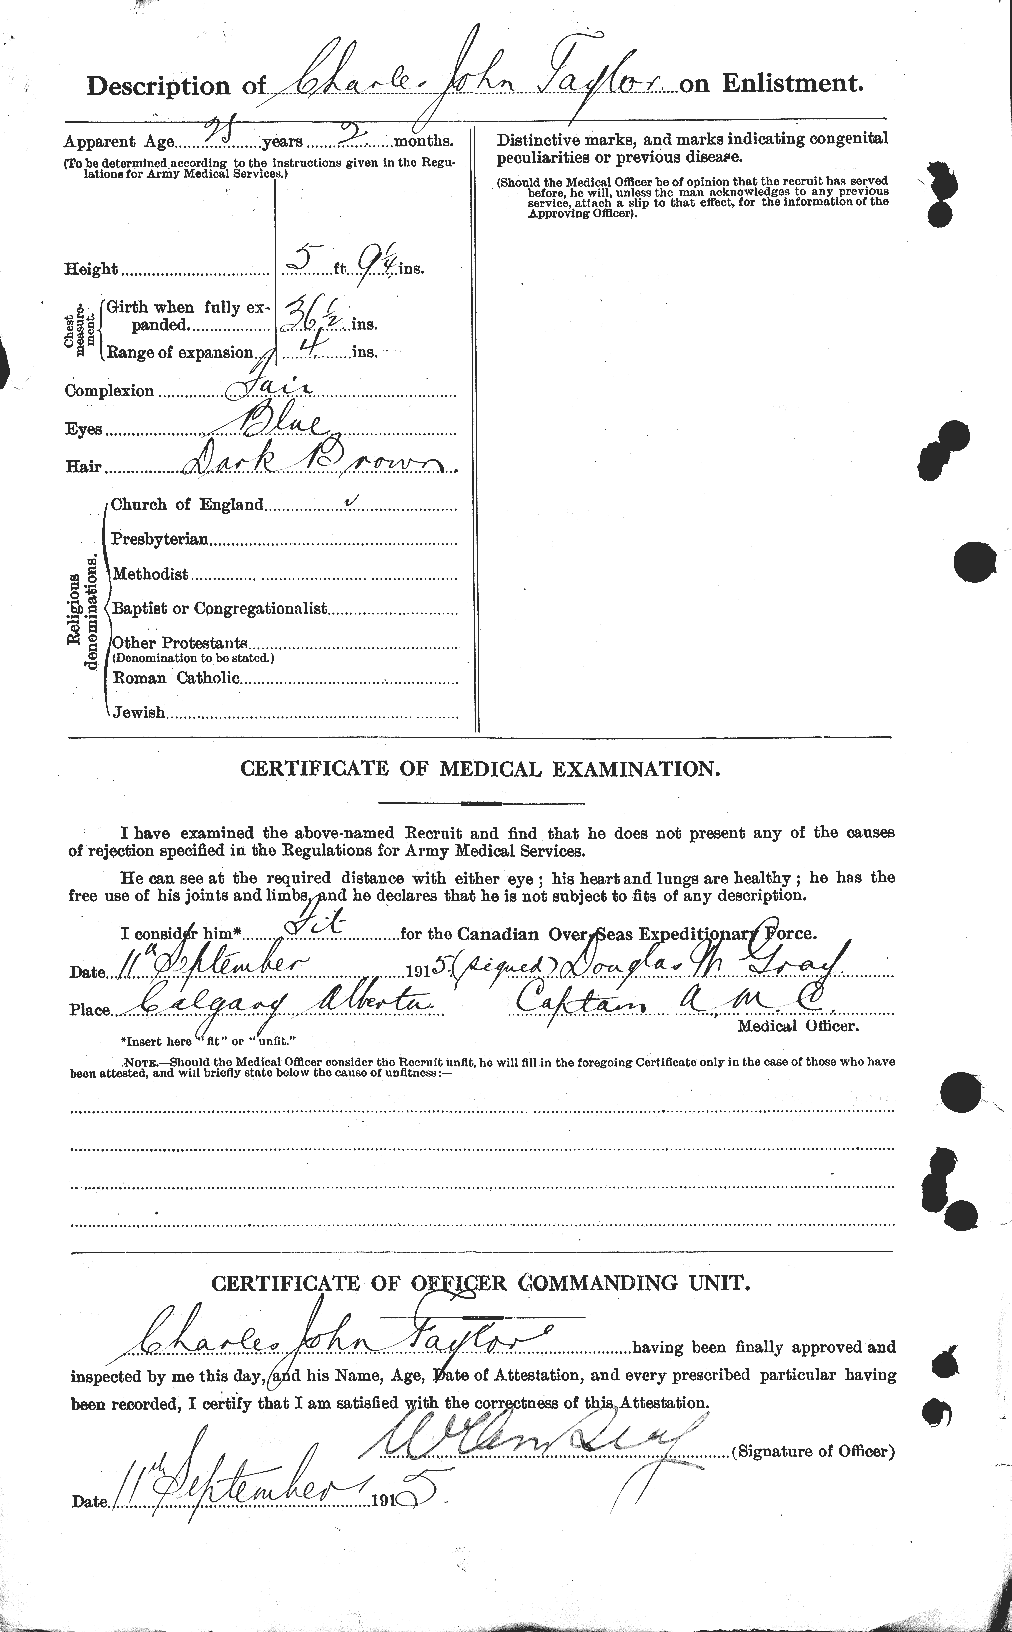 Dossiers du Personnel de la Première Guerre mondiale - CEC 626862b